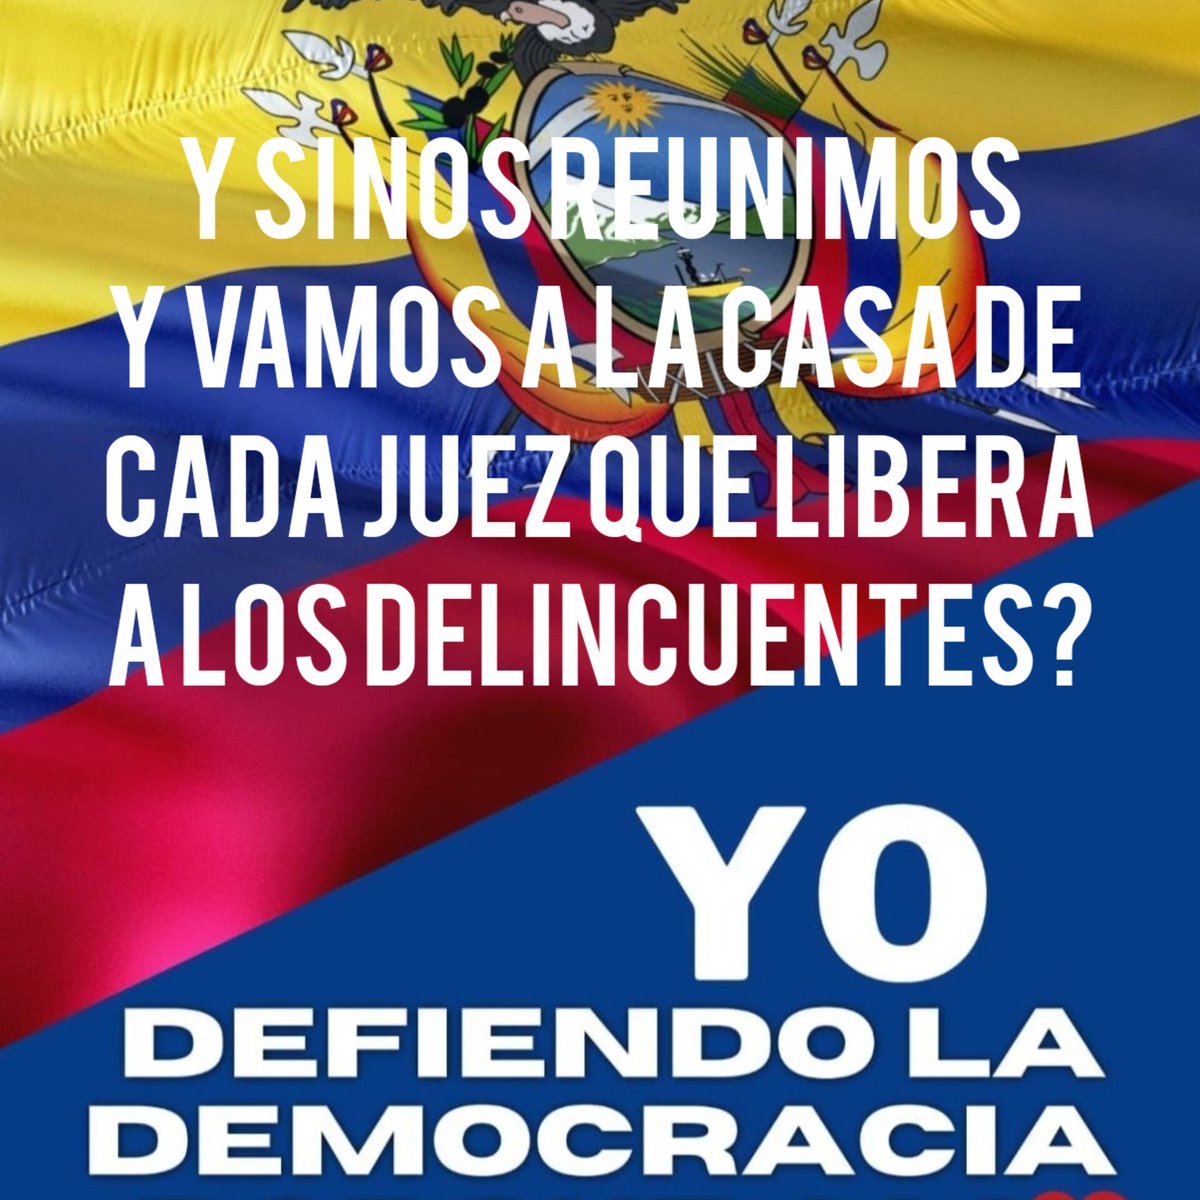 Y si nos reunimos y vamos a la casa de cada juez por dejar libres a los delincuentes?
#EcuadorExigeJusticia
#MuerteAlCorreismo
#MuerteAlComunismo
#RevocatoriaAsamblea